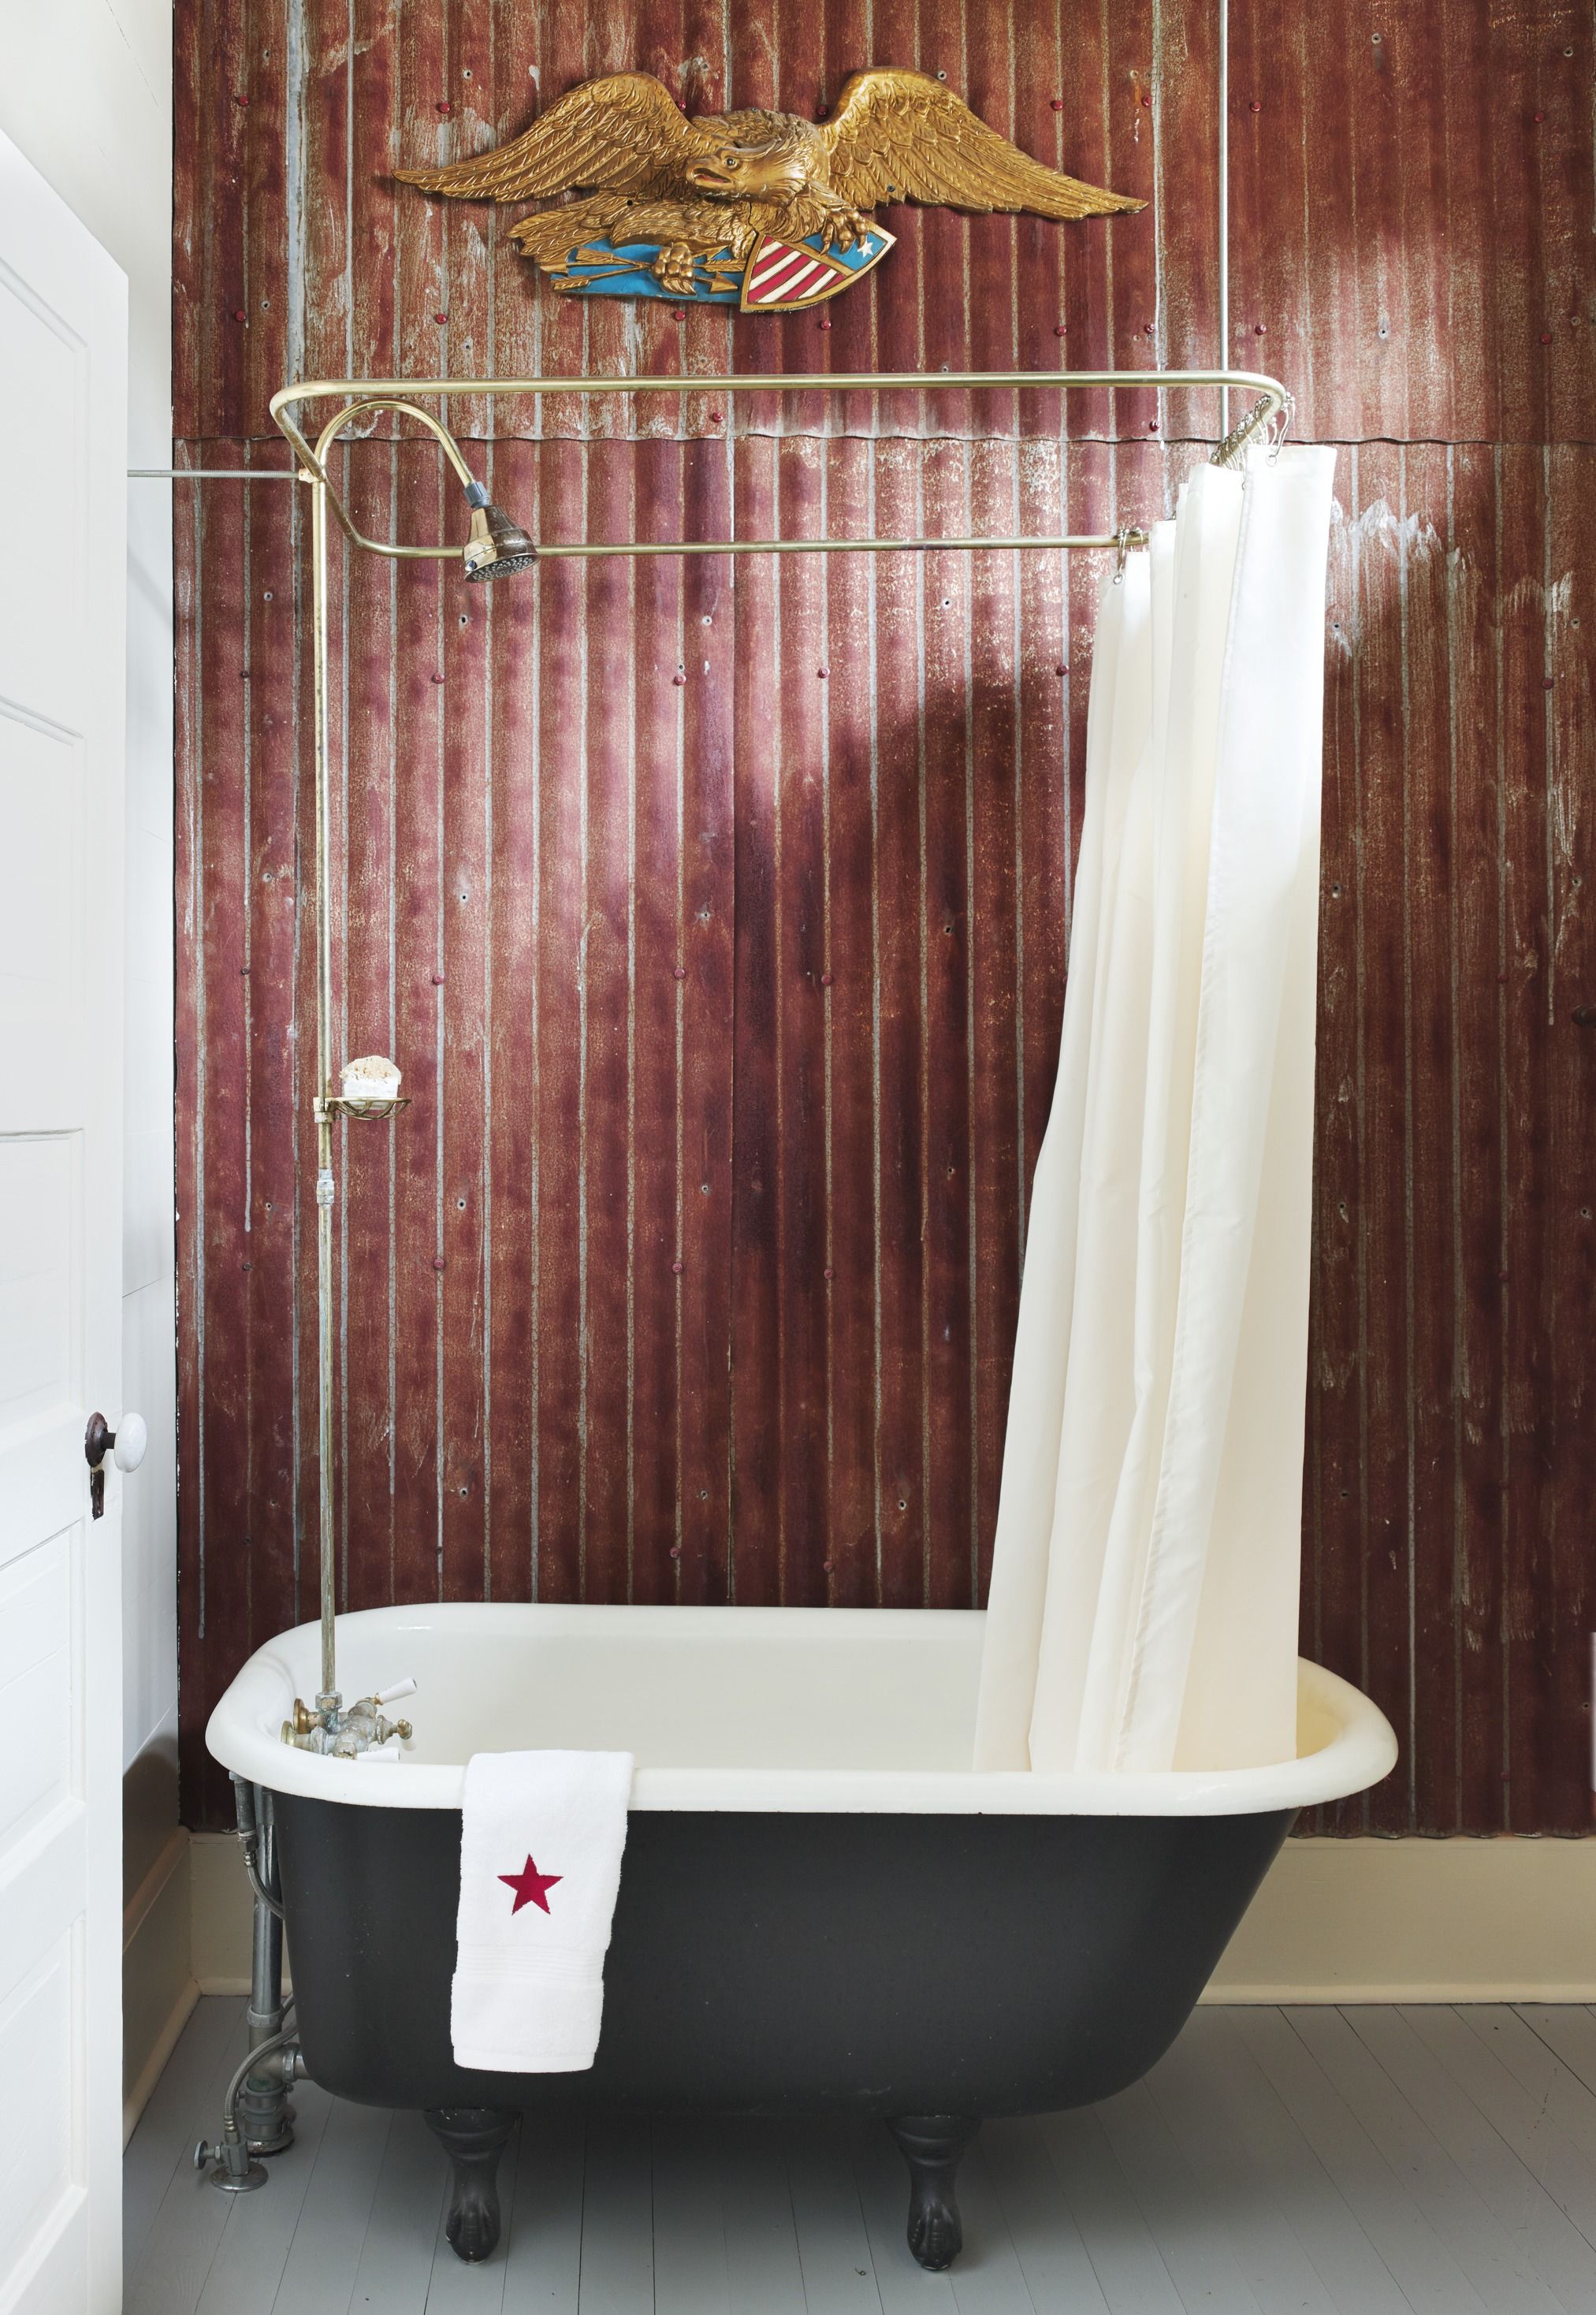 Clawfoot Tub Ideas For Your Bathroom, Diy Clawfoot Tub Shower Curtain Rod